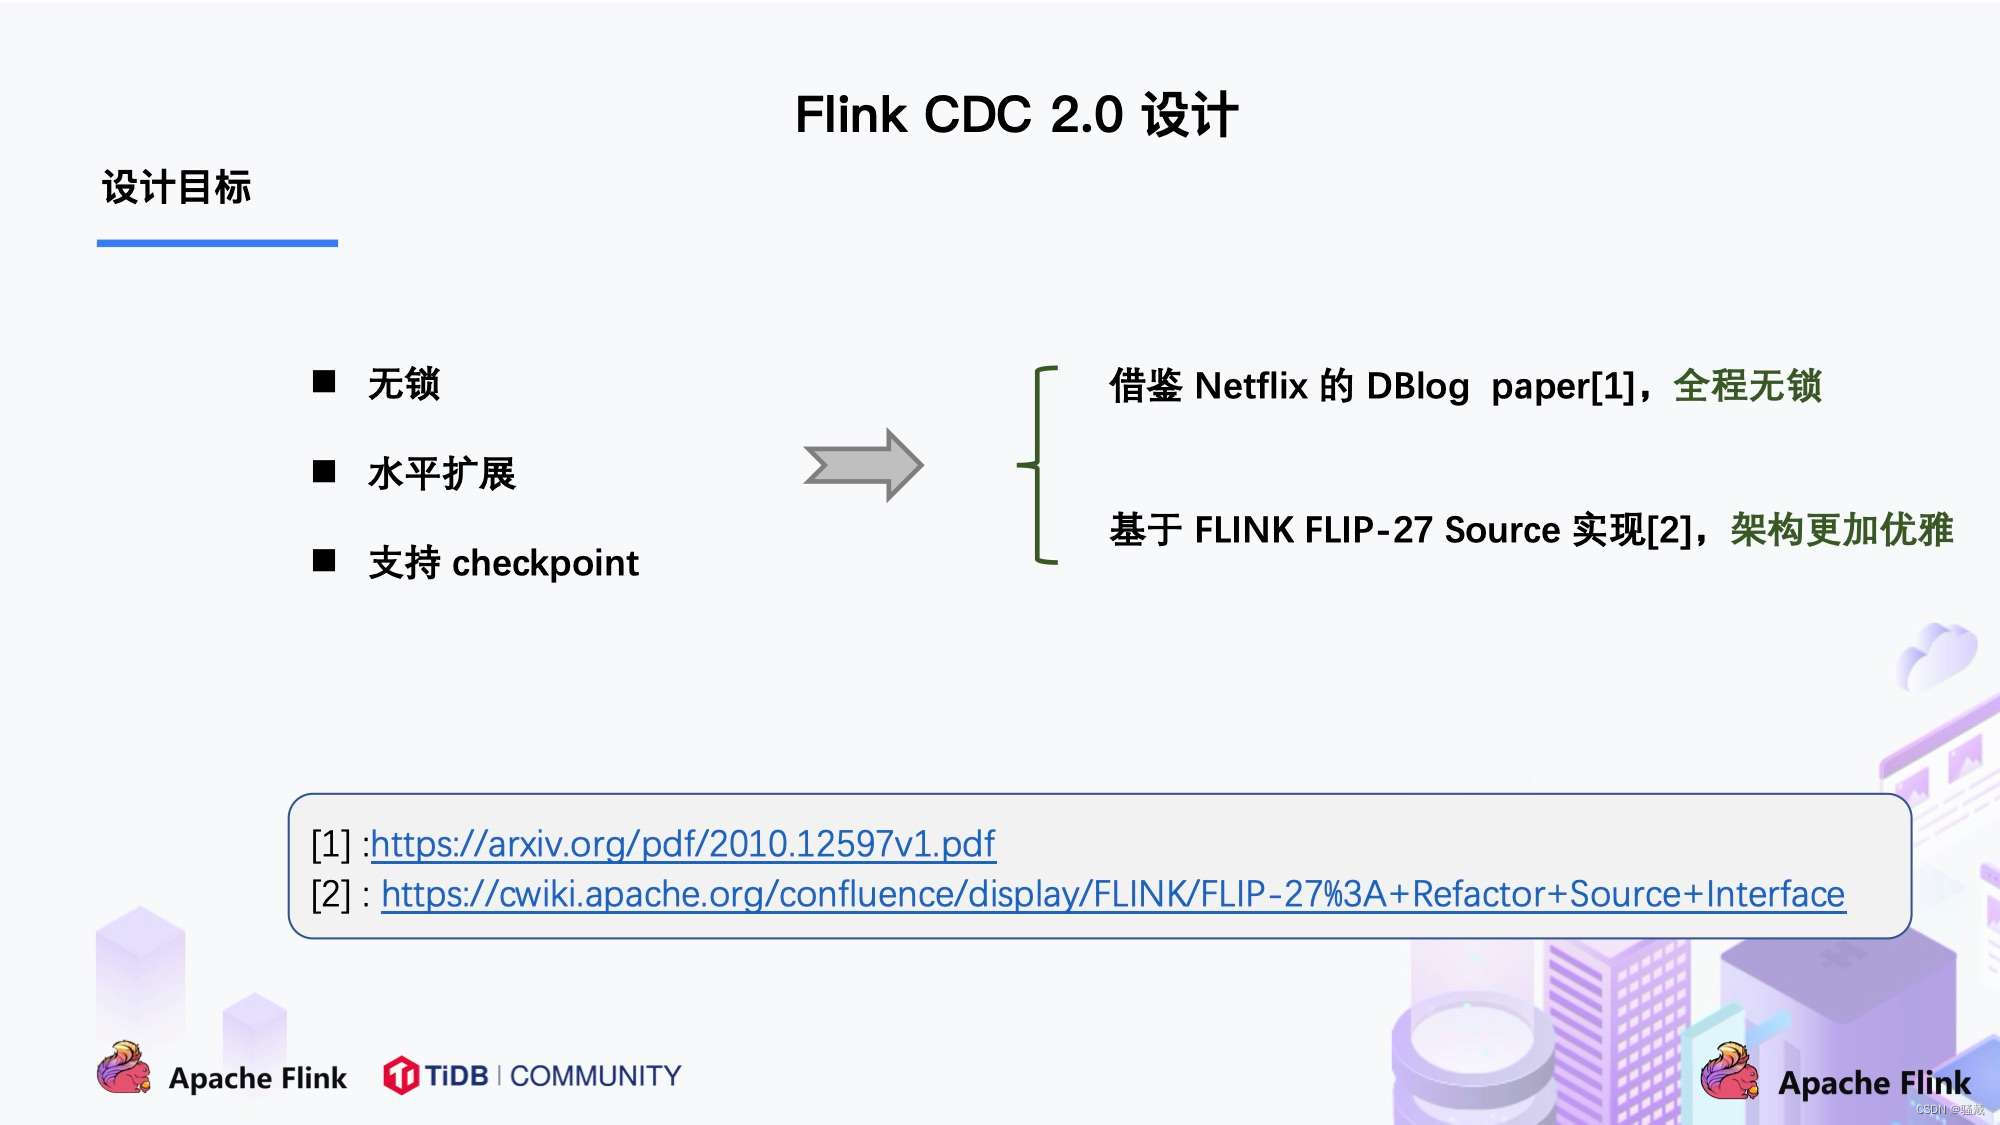 大数据技术之 Flink-CDC3